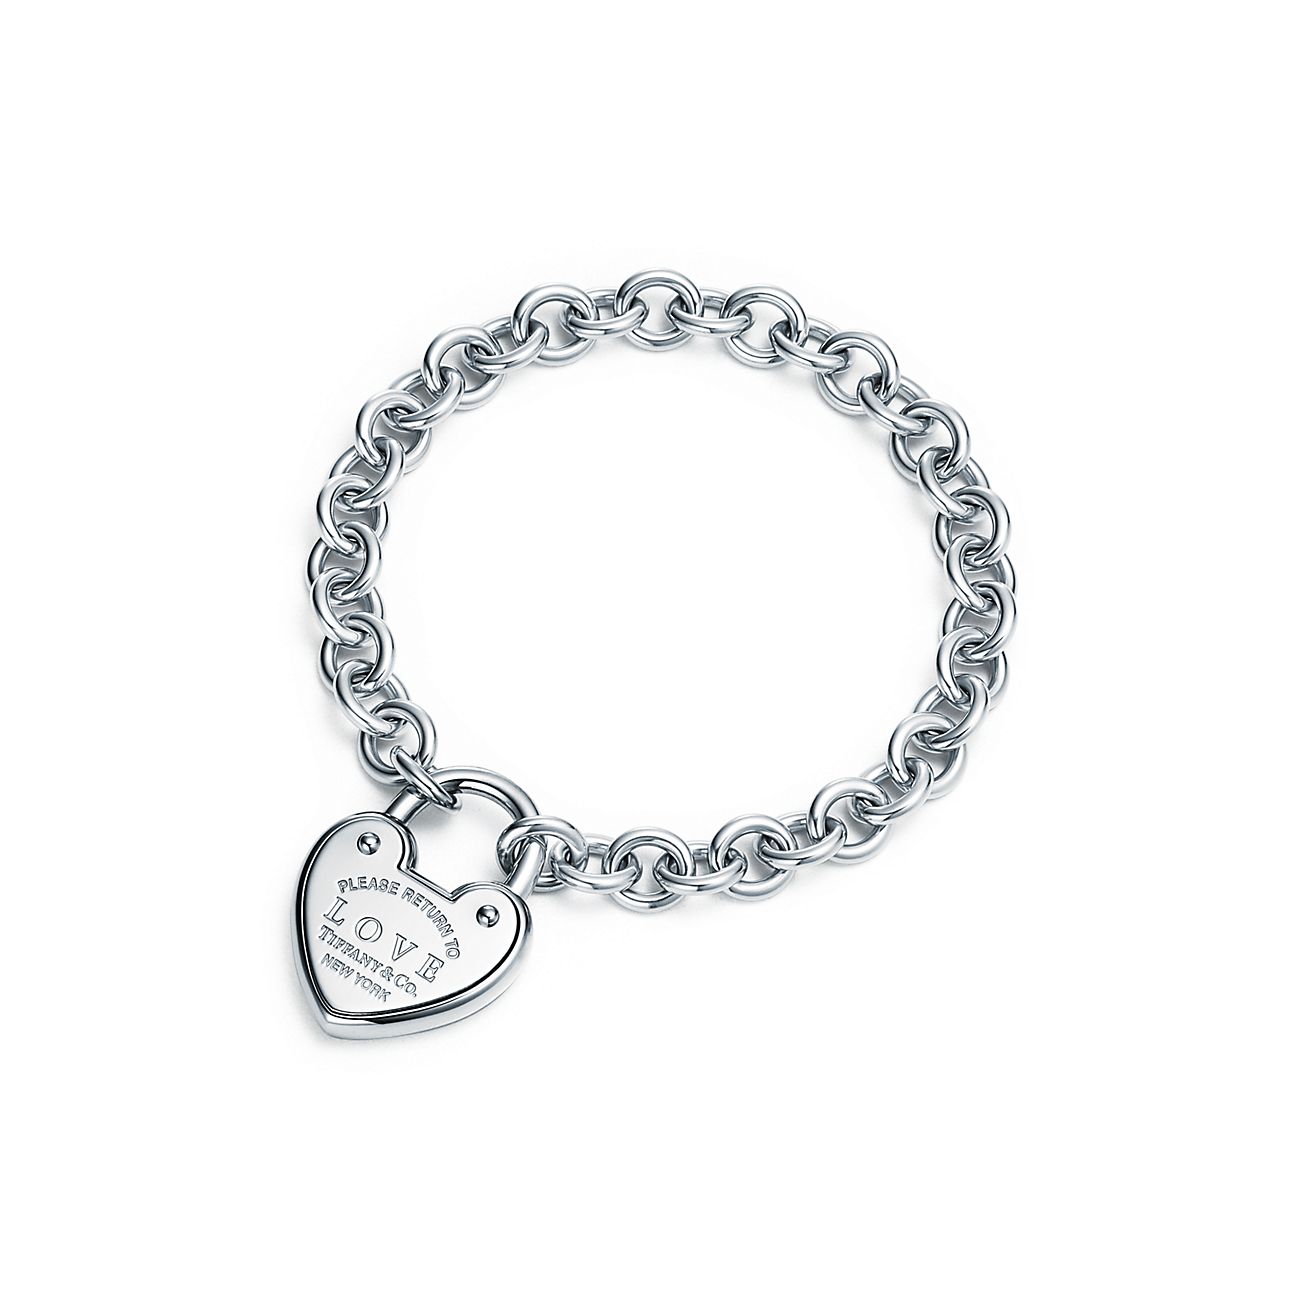 Tiffany & Co I Love You Notes Heart Charm Bracelet 8